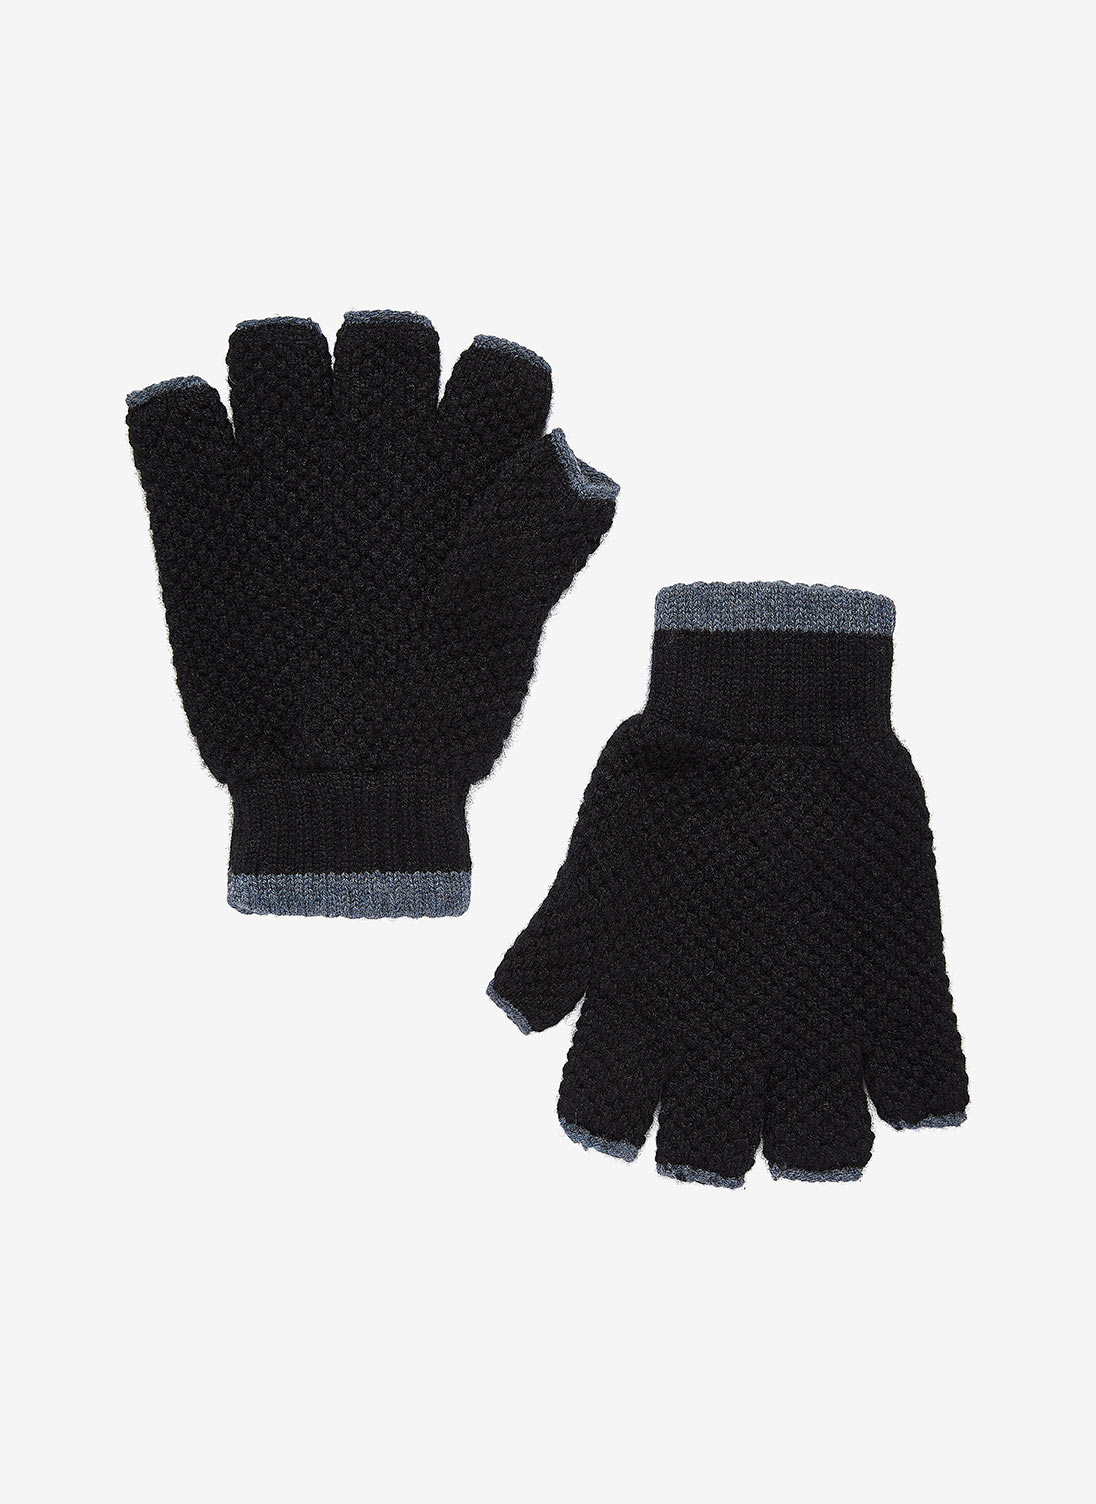 Men's Cashmere Tipped Fingerless Gloves Black & lead